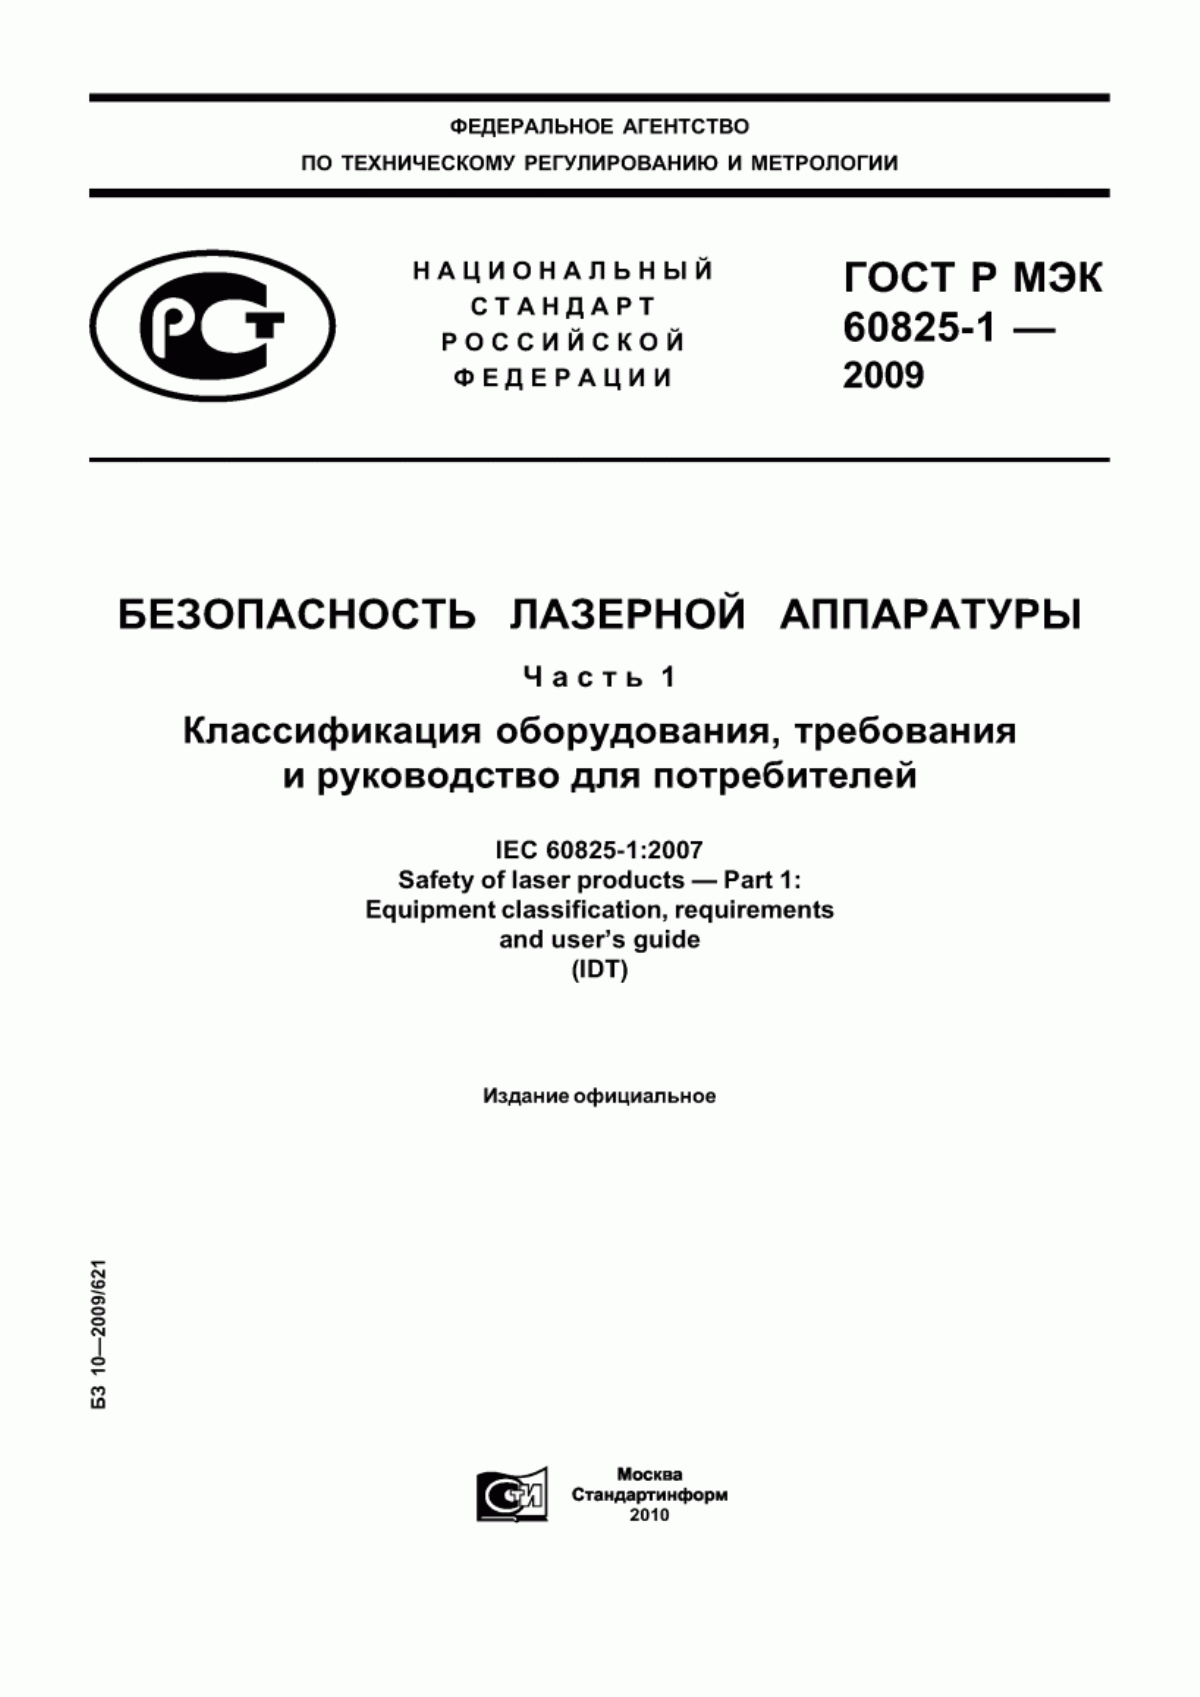 ГОСТ Р МЭК 60825-1-2009 Безопасность лазерной аппаратуры. Часть 1. Классификация оборудования, требования и руководство для потребителей